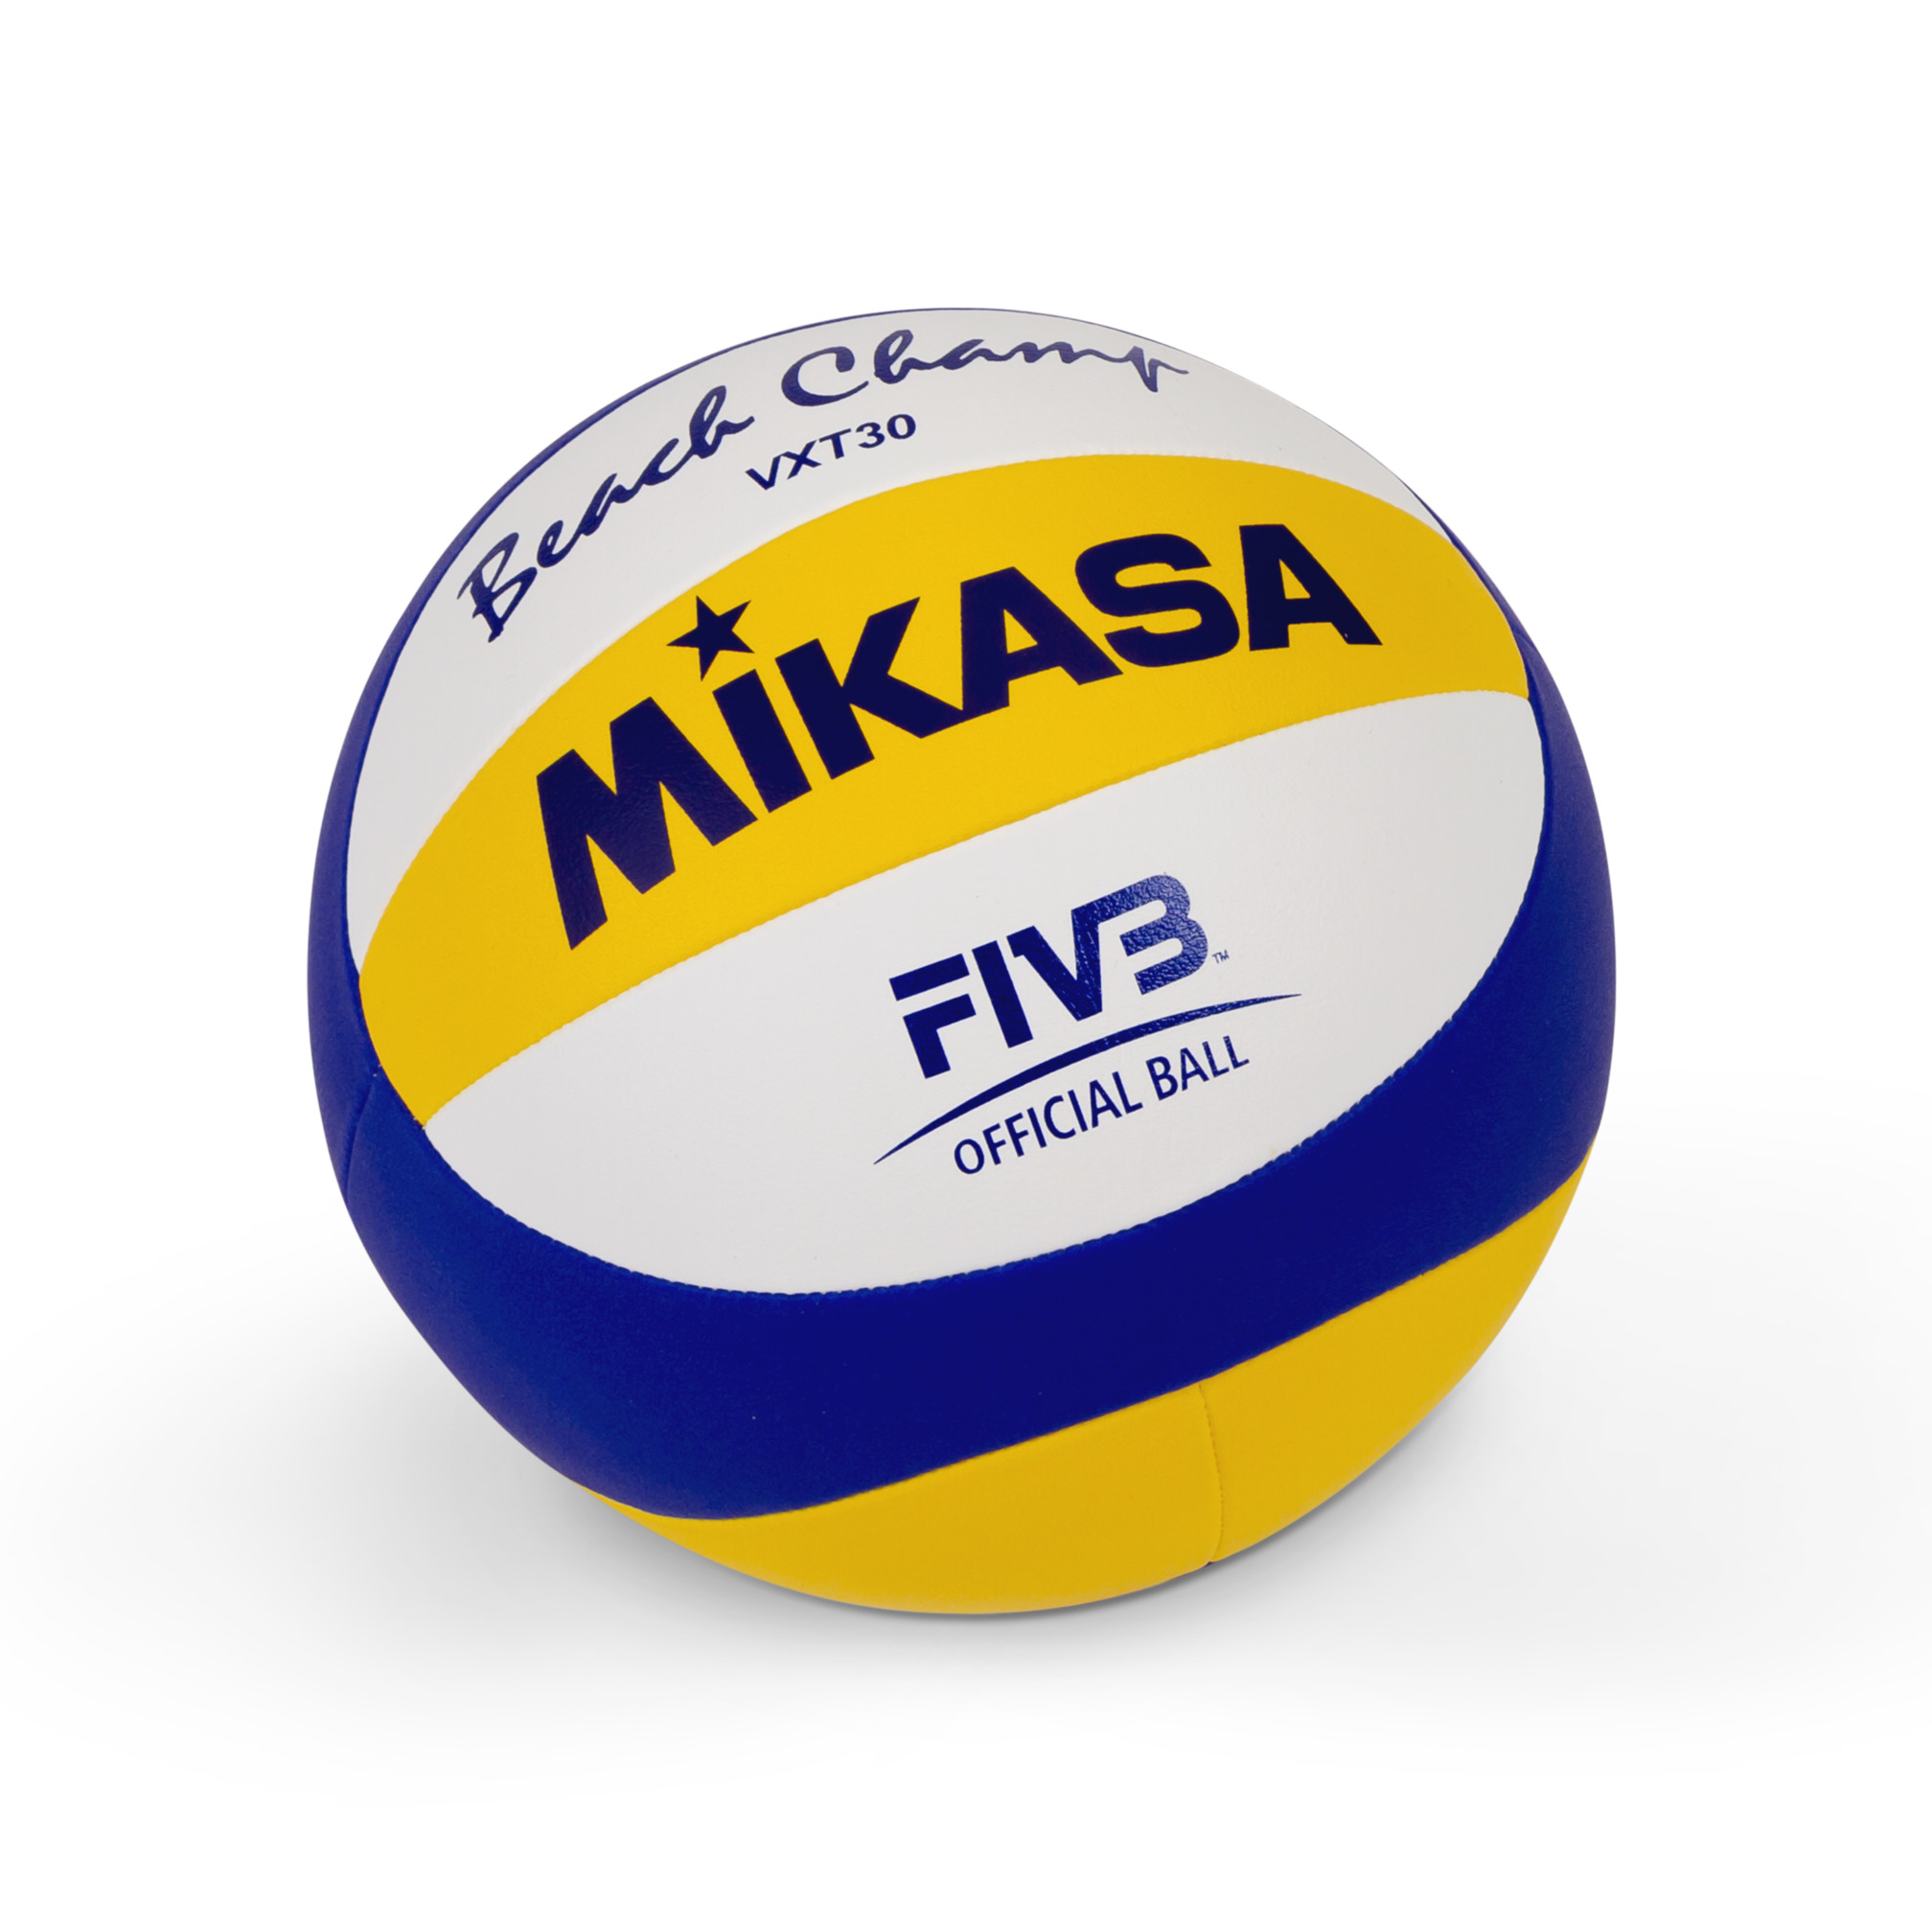 Ballon de beach-volley "Mikasa" Beach Champ VXT30, T5